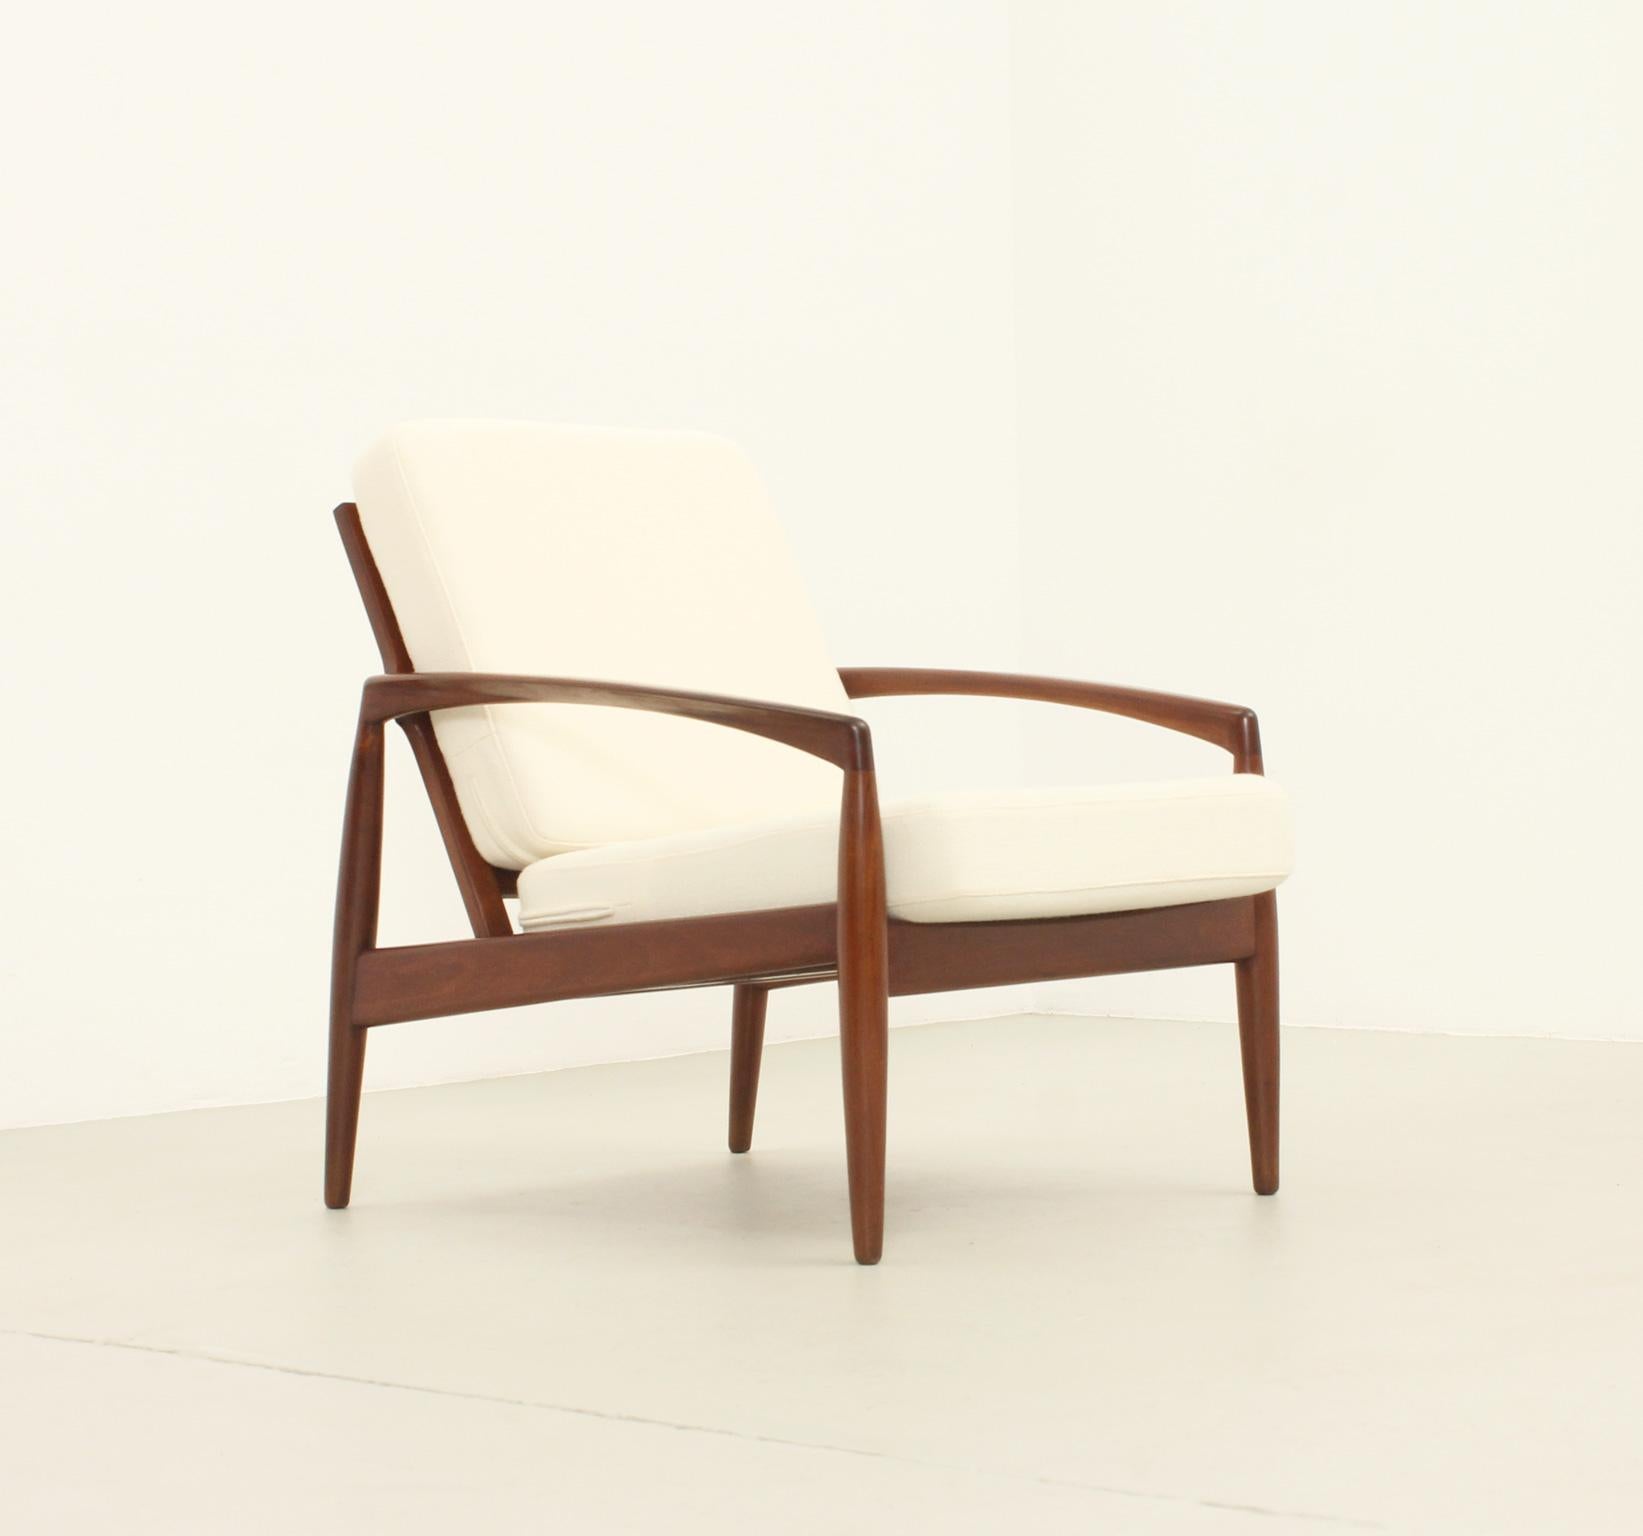 Paper Knife armchair designed in 1956 by Kai Kristiansen for Magnus Olesen, Denmark. Teak frame upholstered with new wool fabric from Kvadrat.